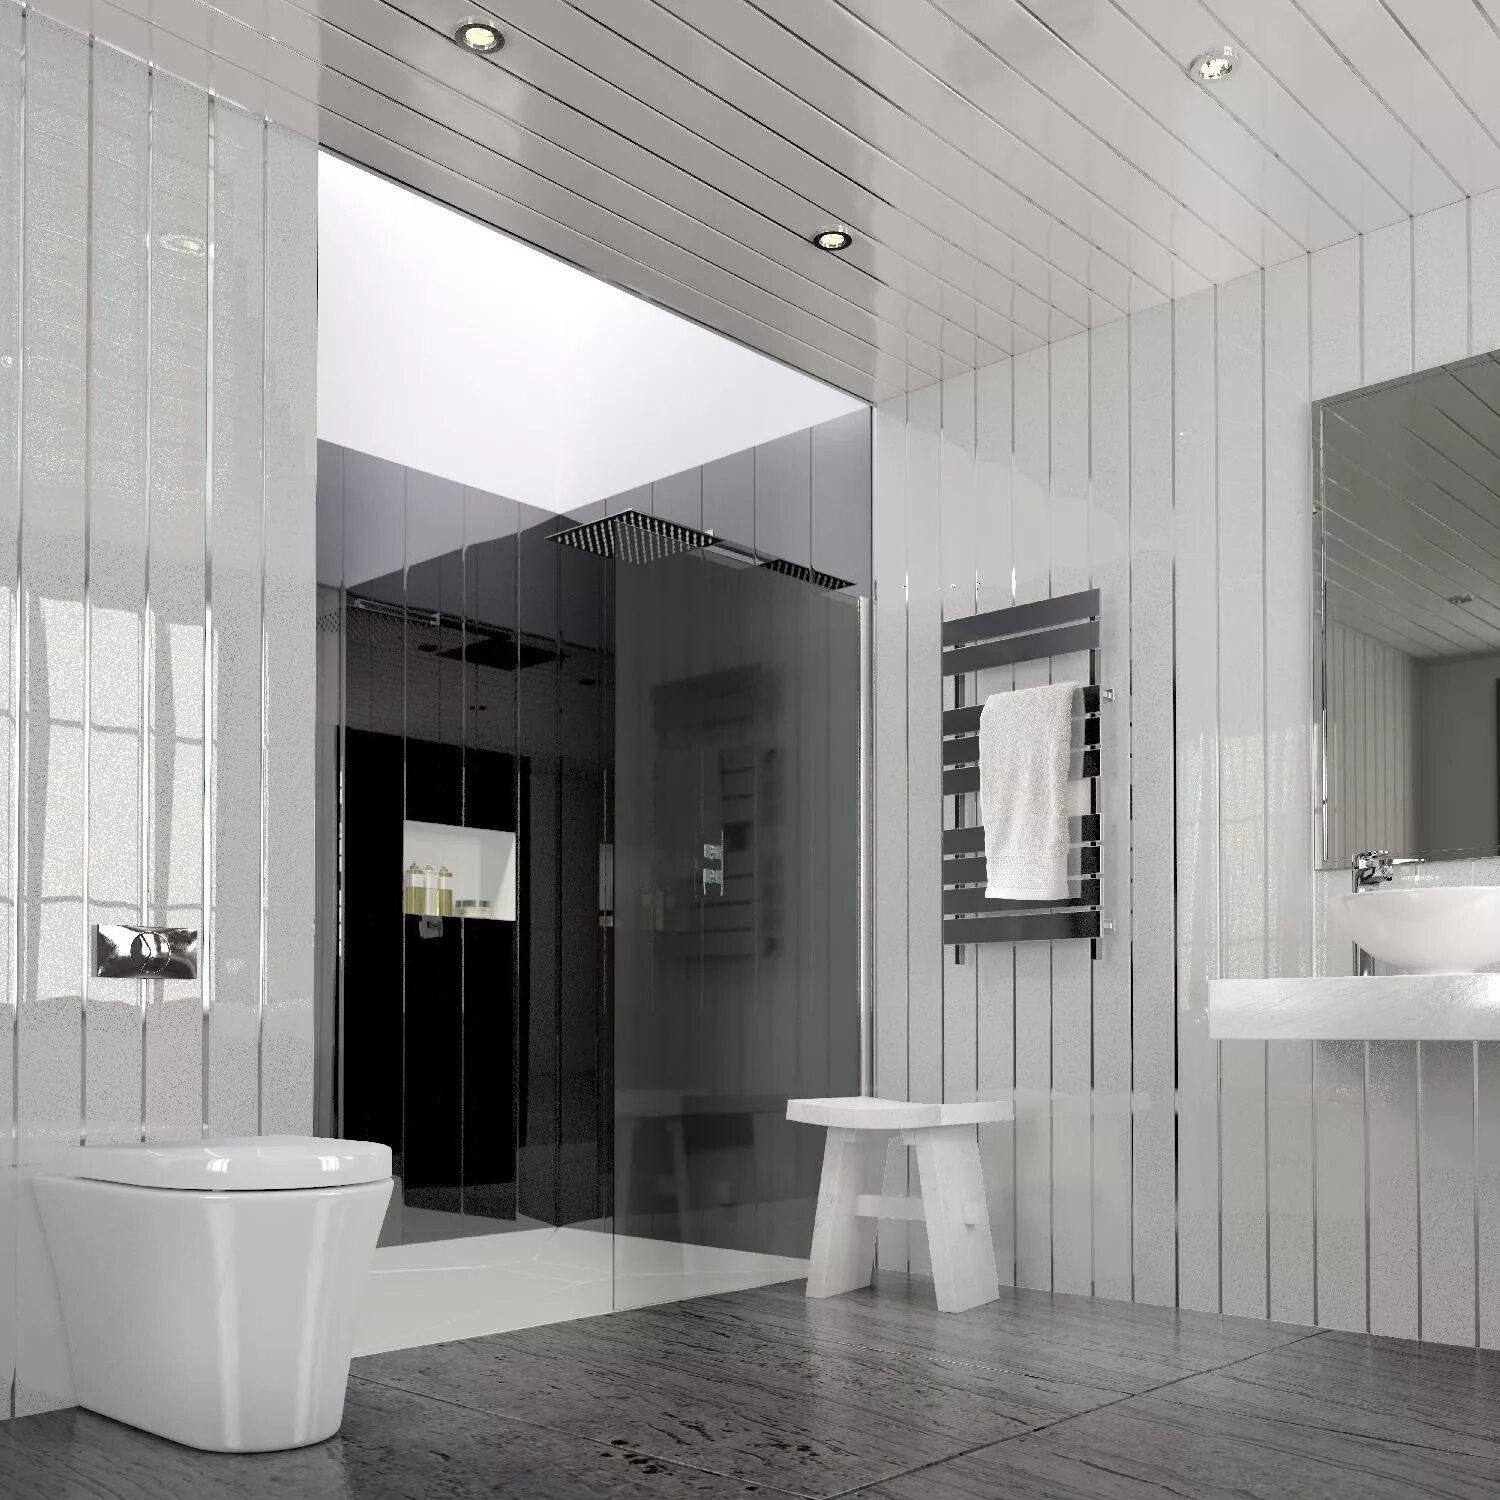 Интерьер ванны панели. Ванная с белыми панелями. Ванная комната обшитая белыми панелями. Ванная отделанная пластиком. Ванная комната из пластиковых панелей.